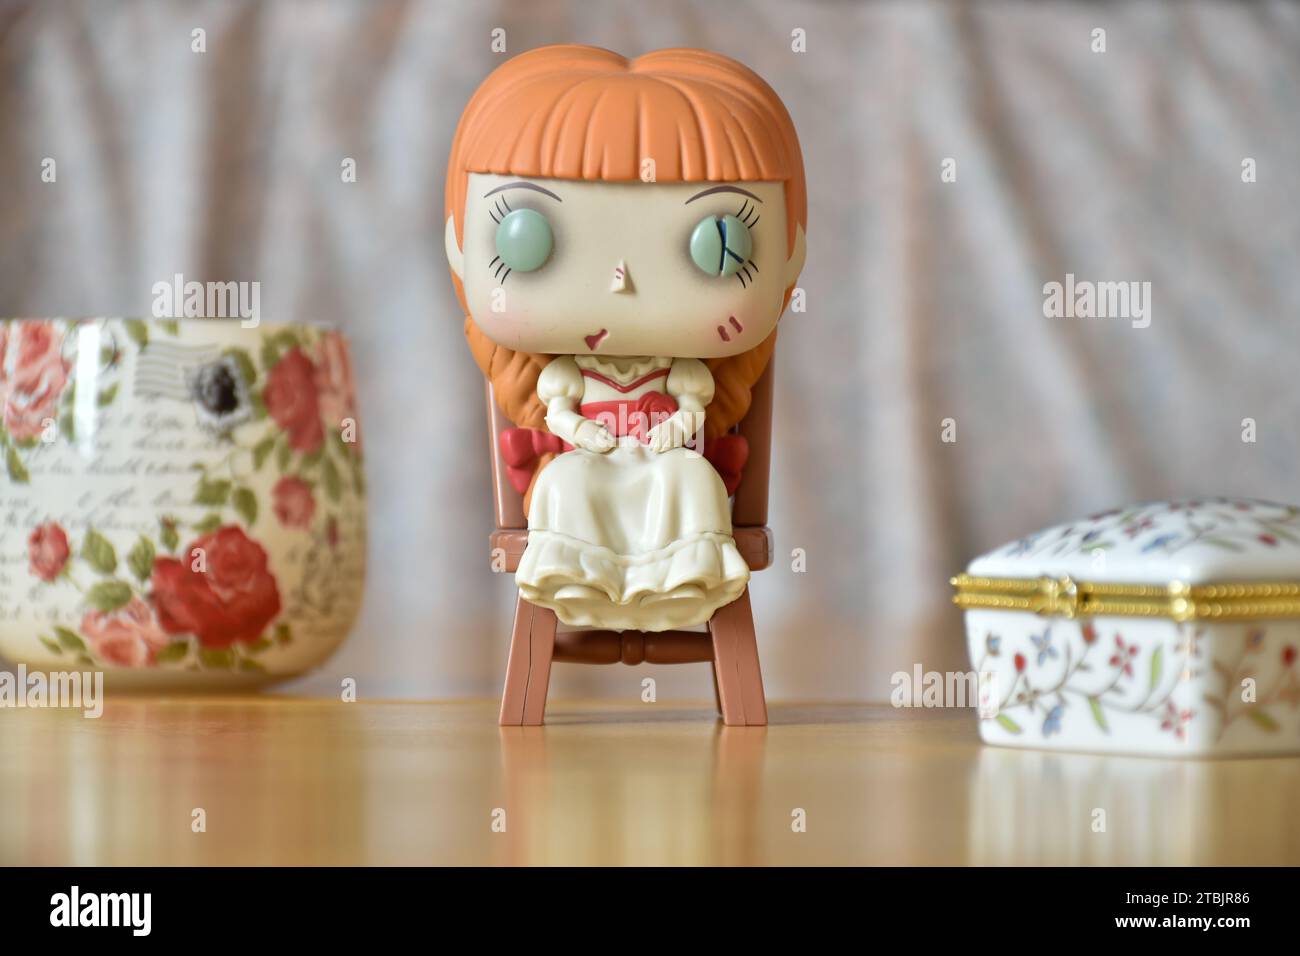 Funko Pop figurine d'action de poupée hantée Annabelle des films d'horreur évoquant. Intérieur vintage, boîte à bijoux imprimée de fleurs blanches et vase. Banque D'Images